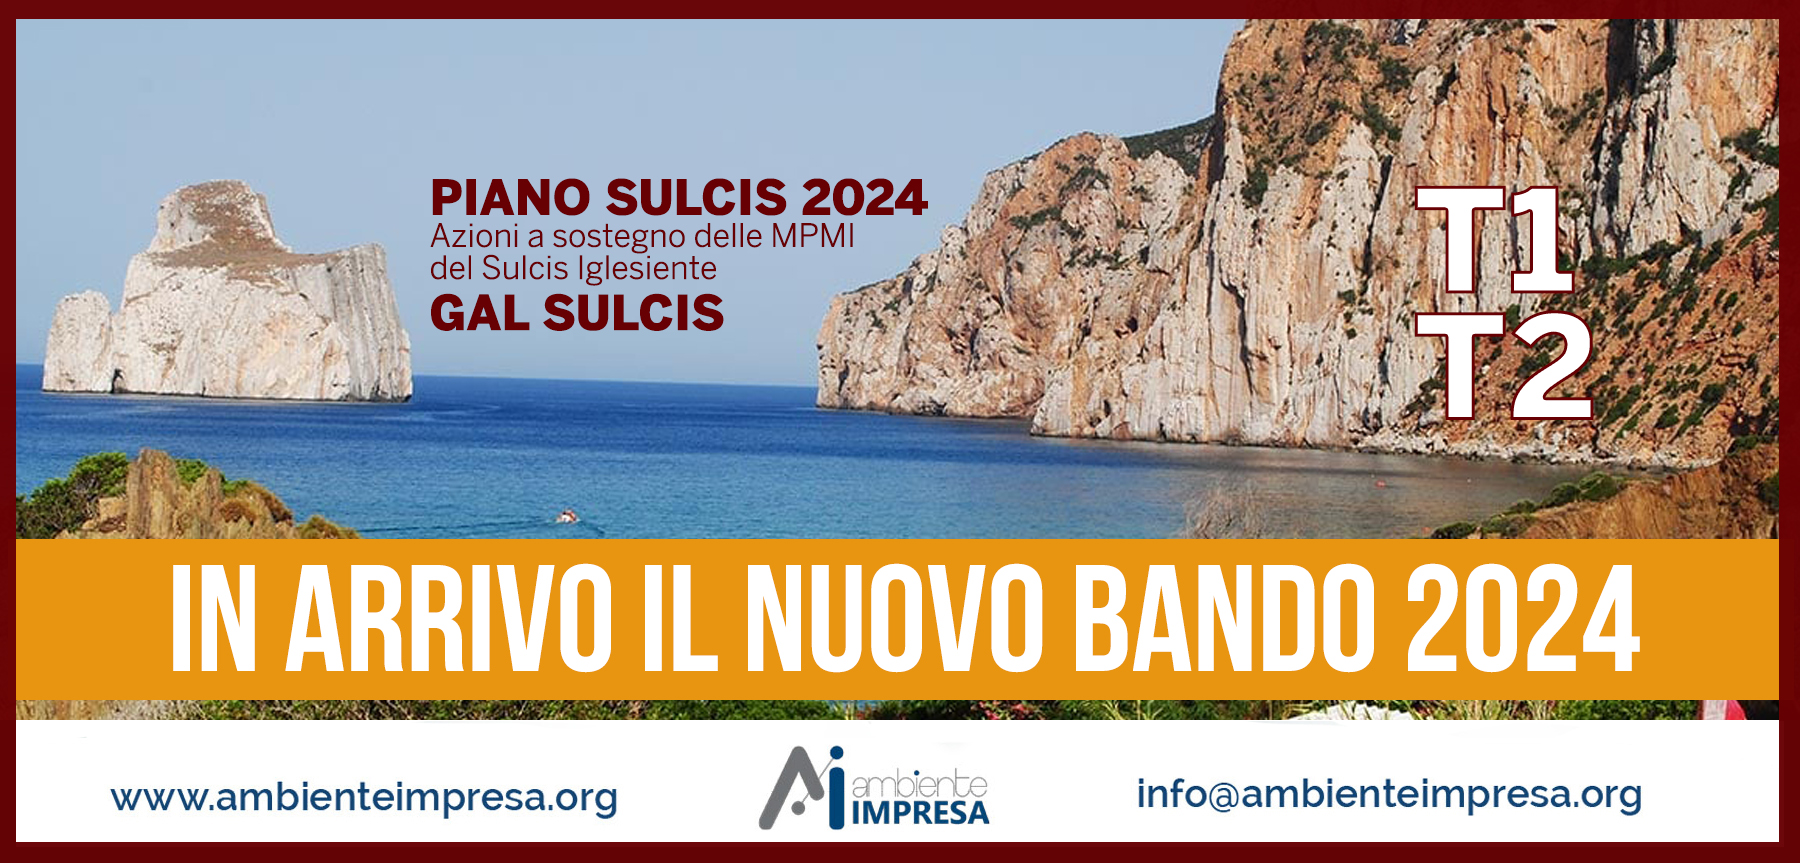 Piano Sulcis 2023 - azioni a sostegno della MPMI del Sulcis Iglesiente - Gal Sulcis - Ambiente Impresa srl  - Cagliari